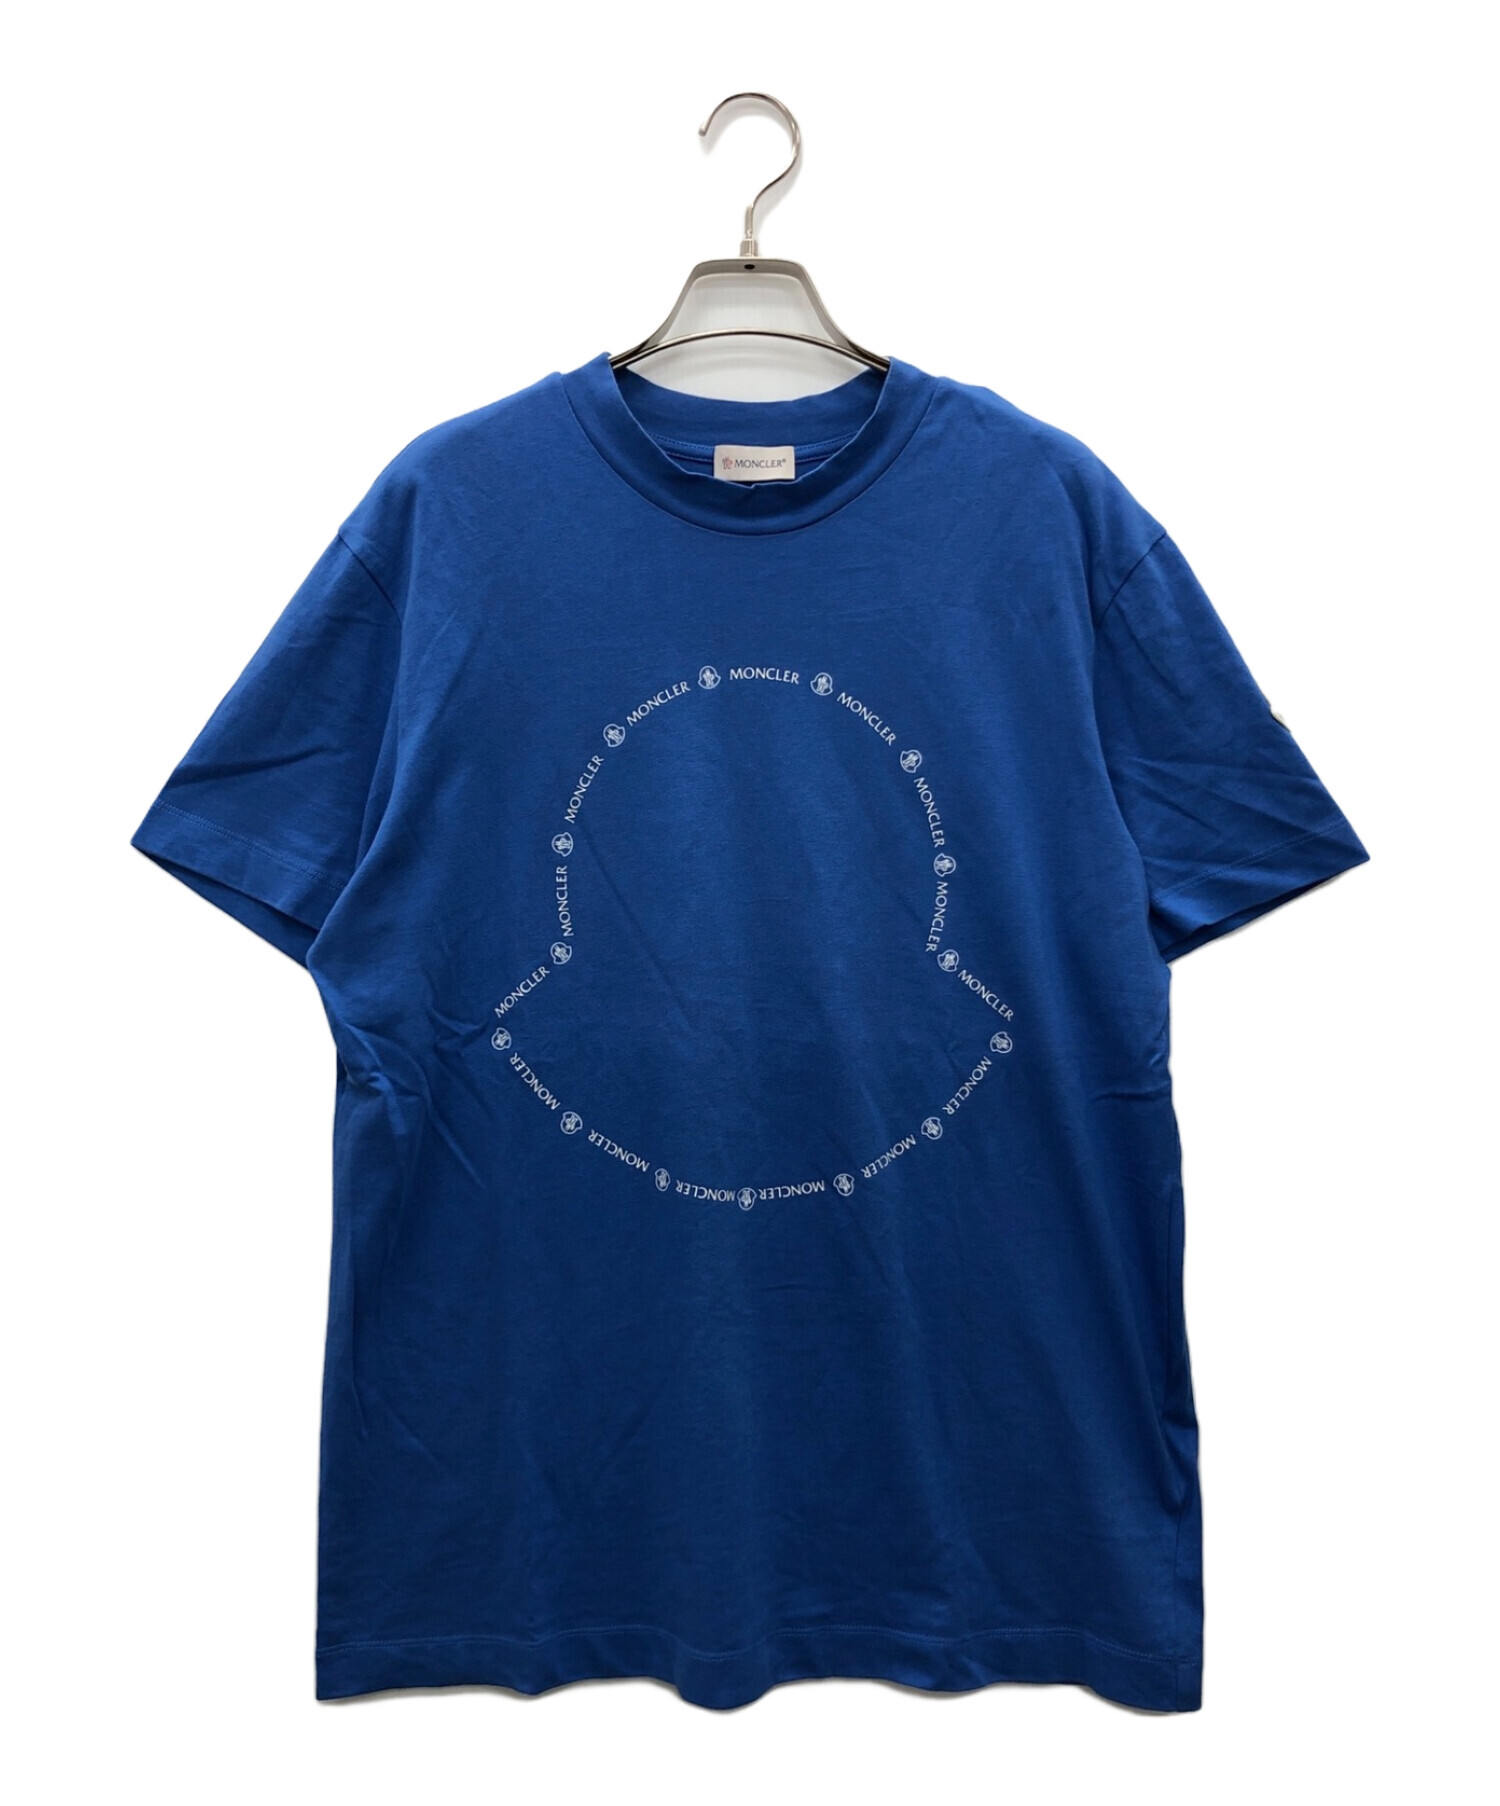 MONCLER (モンクレール) Tシャツ ブルー サイズ:S